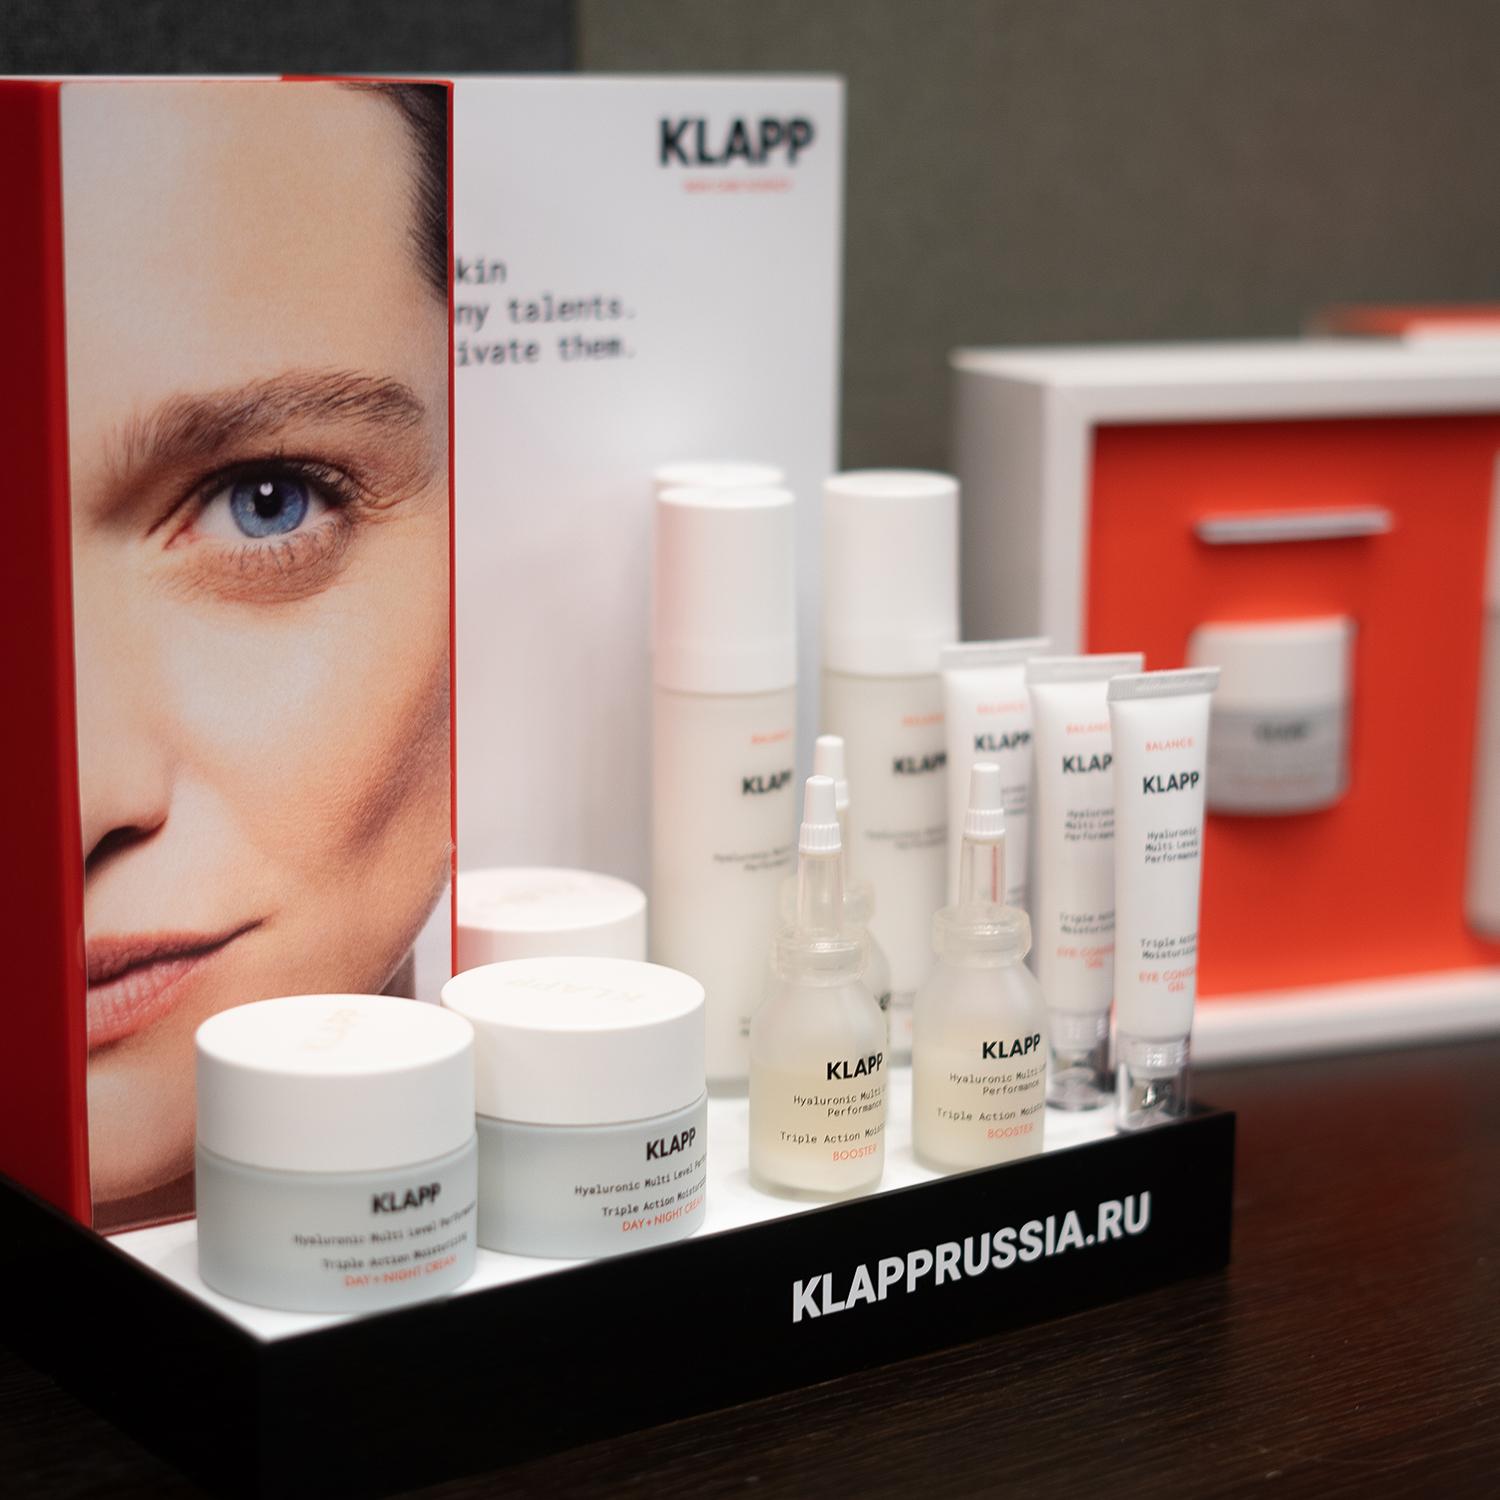 Бренд немецкой профессиональной косметики KLAPP SKIN CARE SCIENCE представил новинки и объявил о тотальных изменениях в бренде!